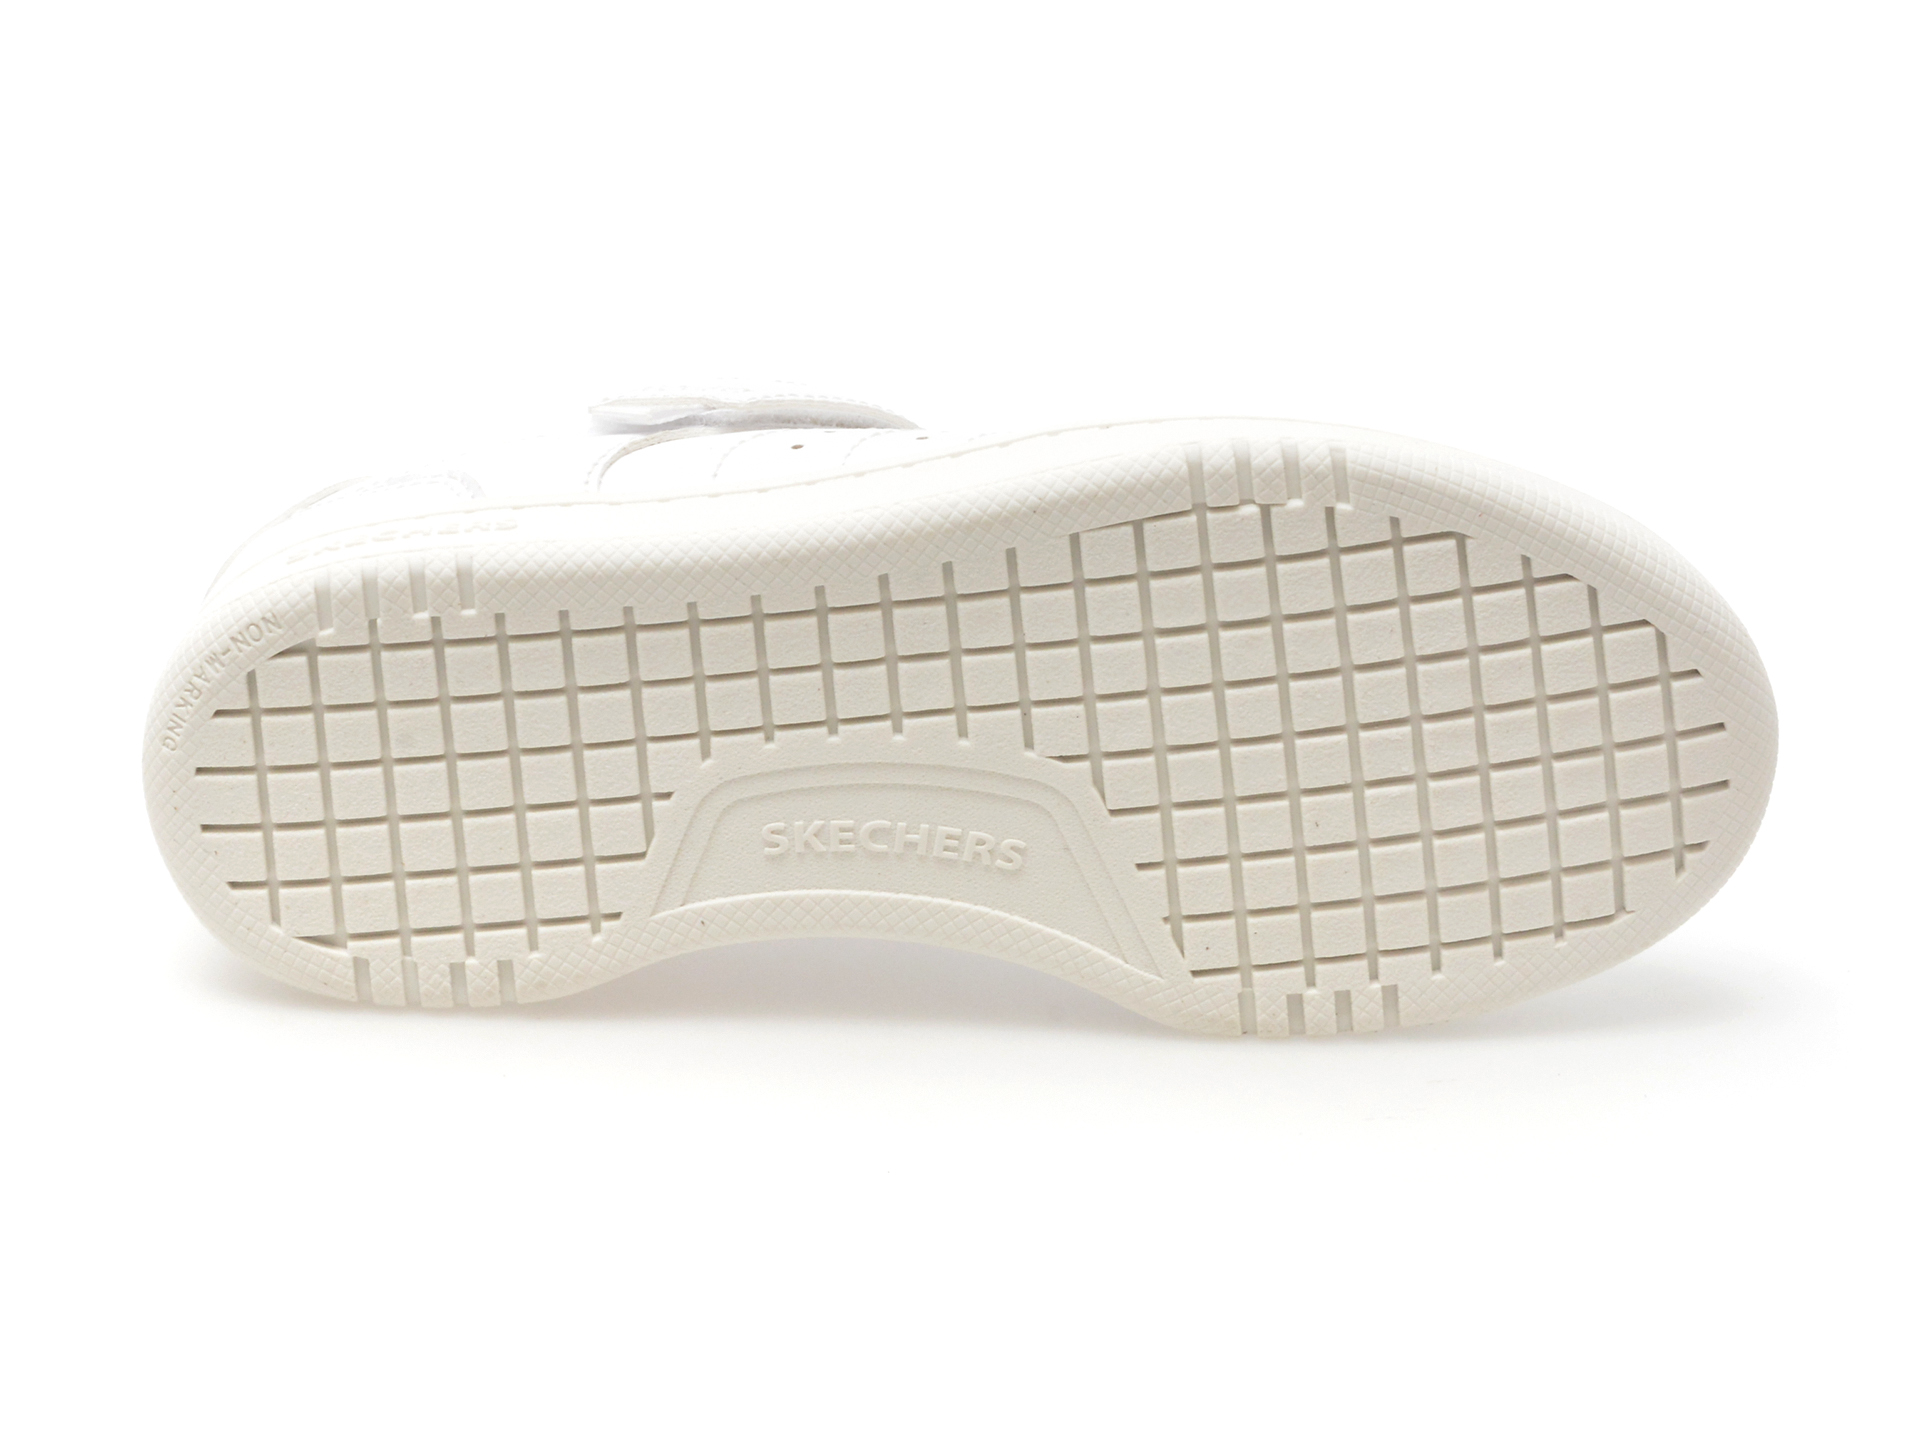 Pantofi sport SKECHERS albi, QUICK STREET, din piele ecologica